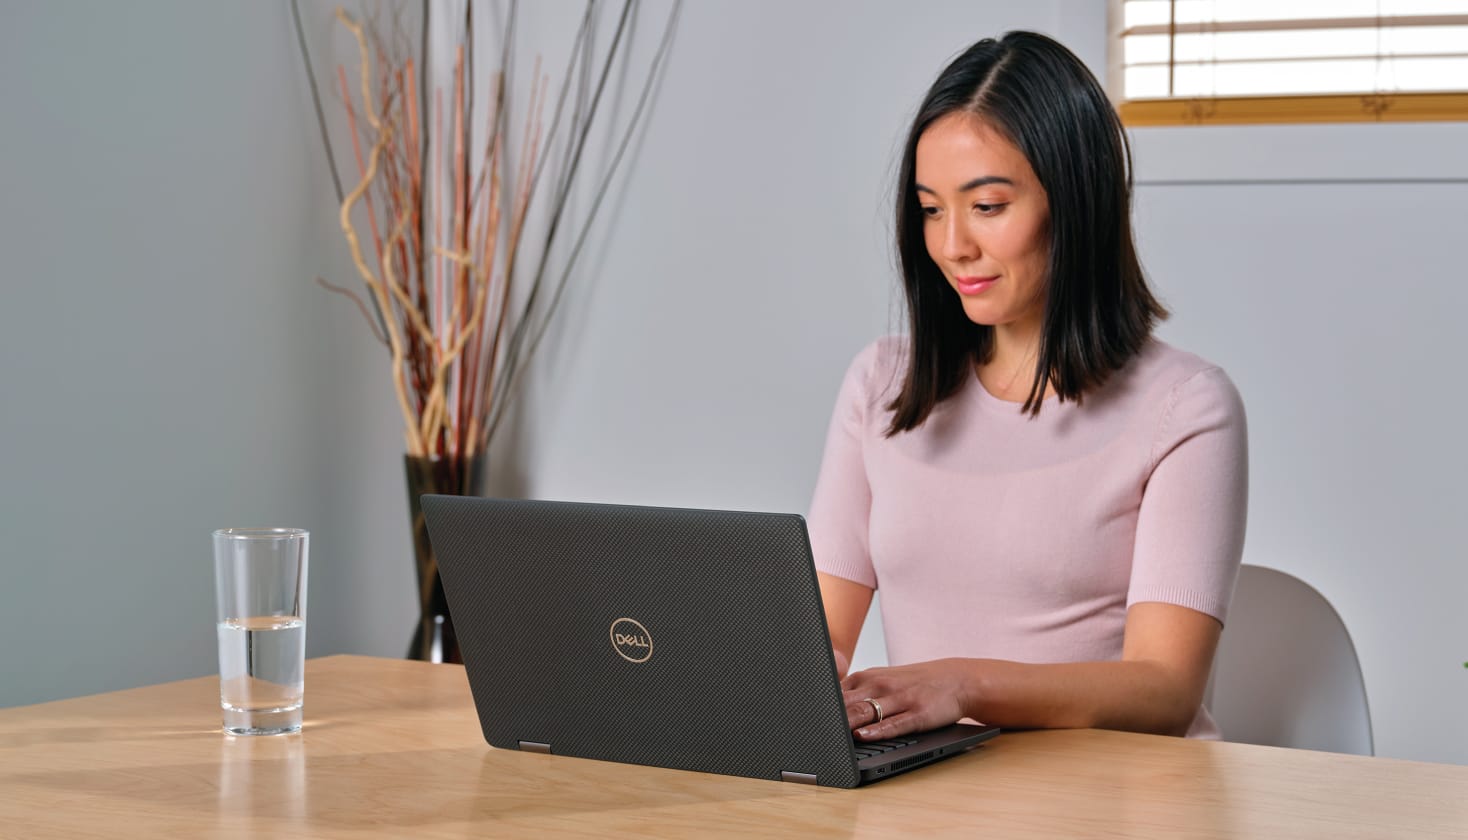 Eine Person schaut auf einen Laptop, vermutlich im Zusammenhang mit einem Kundenkontaktverlauf.